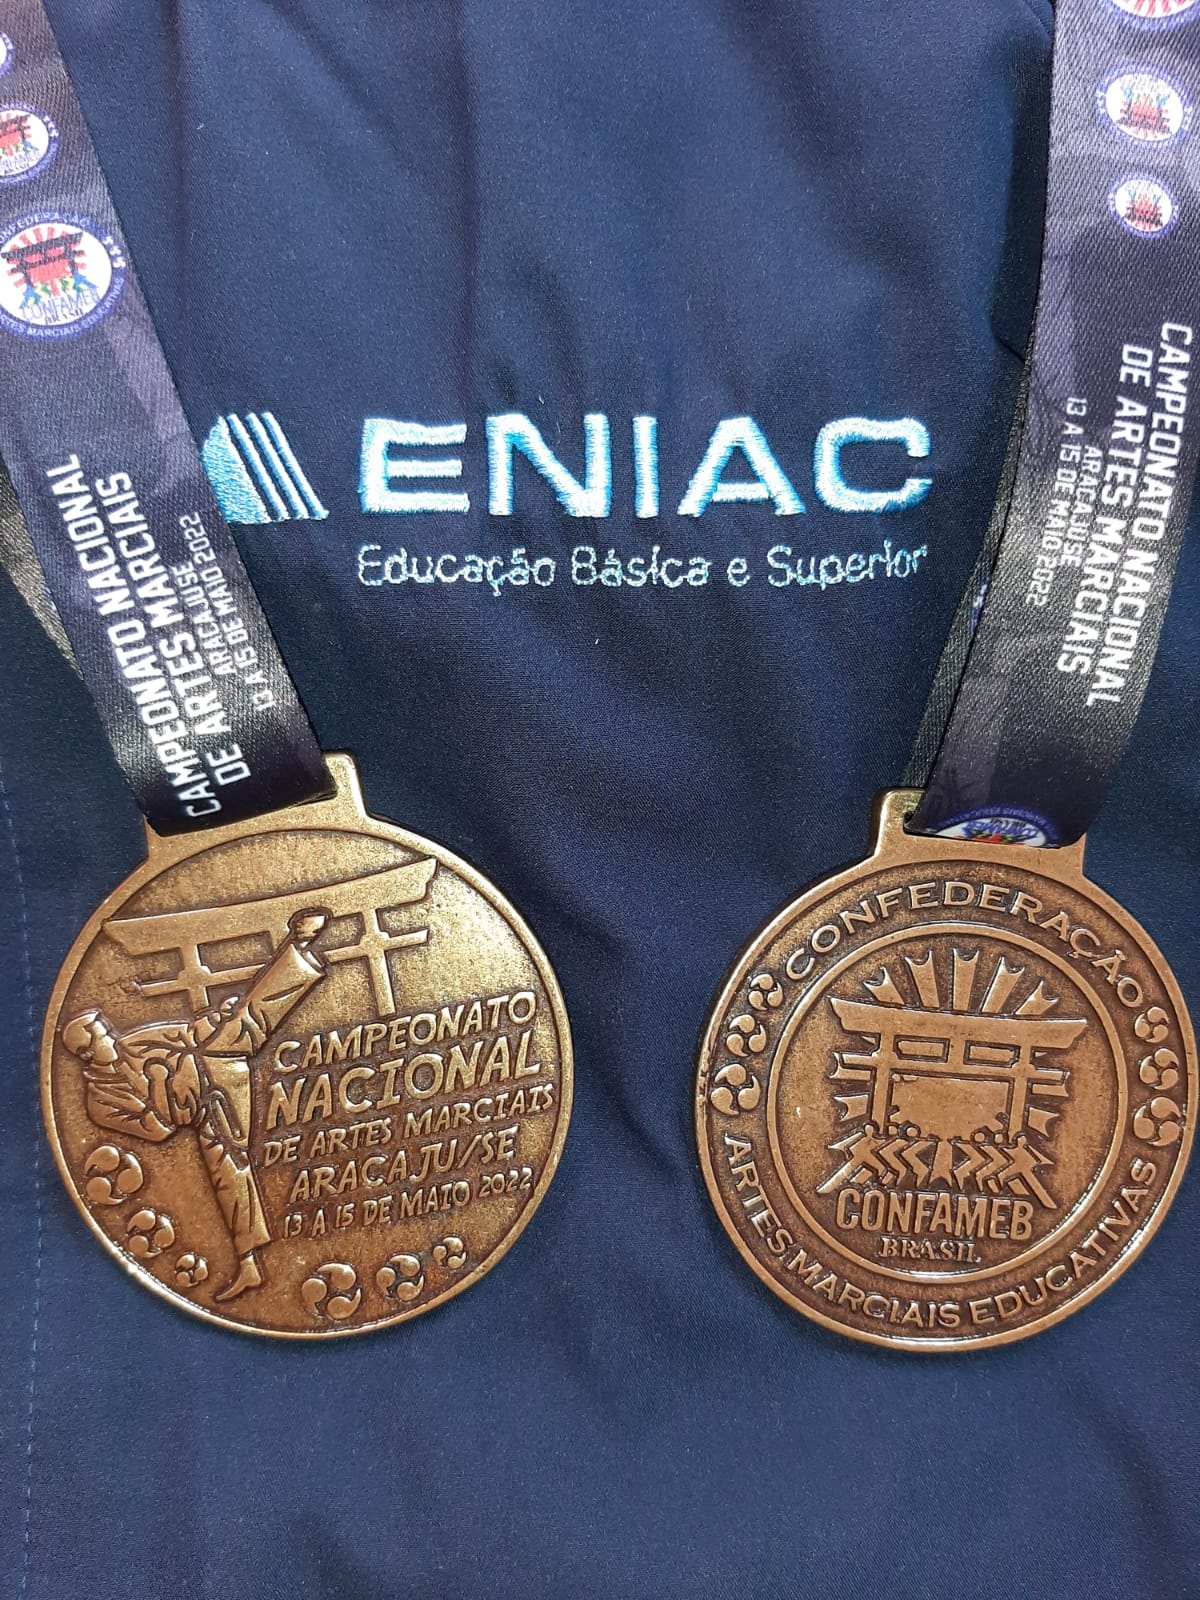 ENIAC marca presença no Campeonato Nacional de Artes Marciais